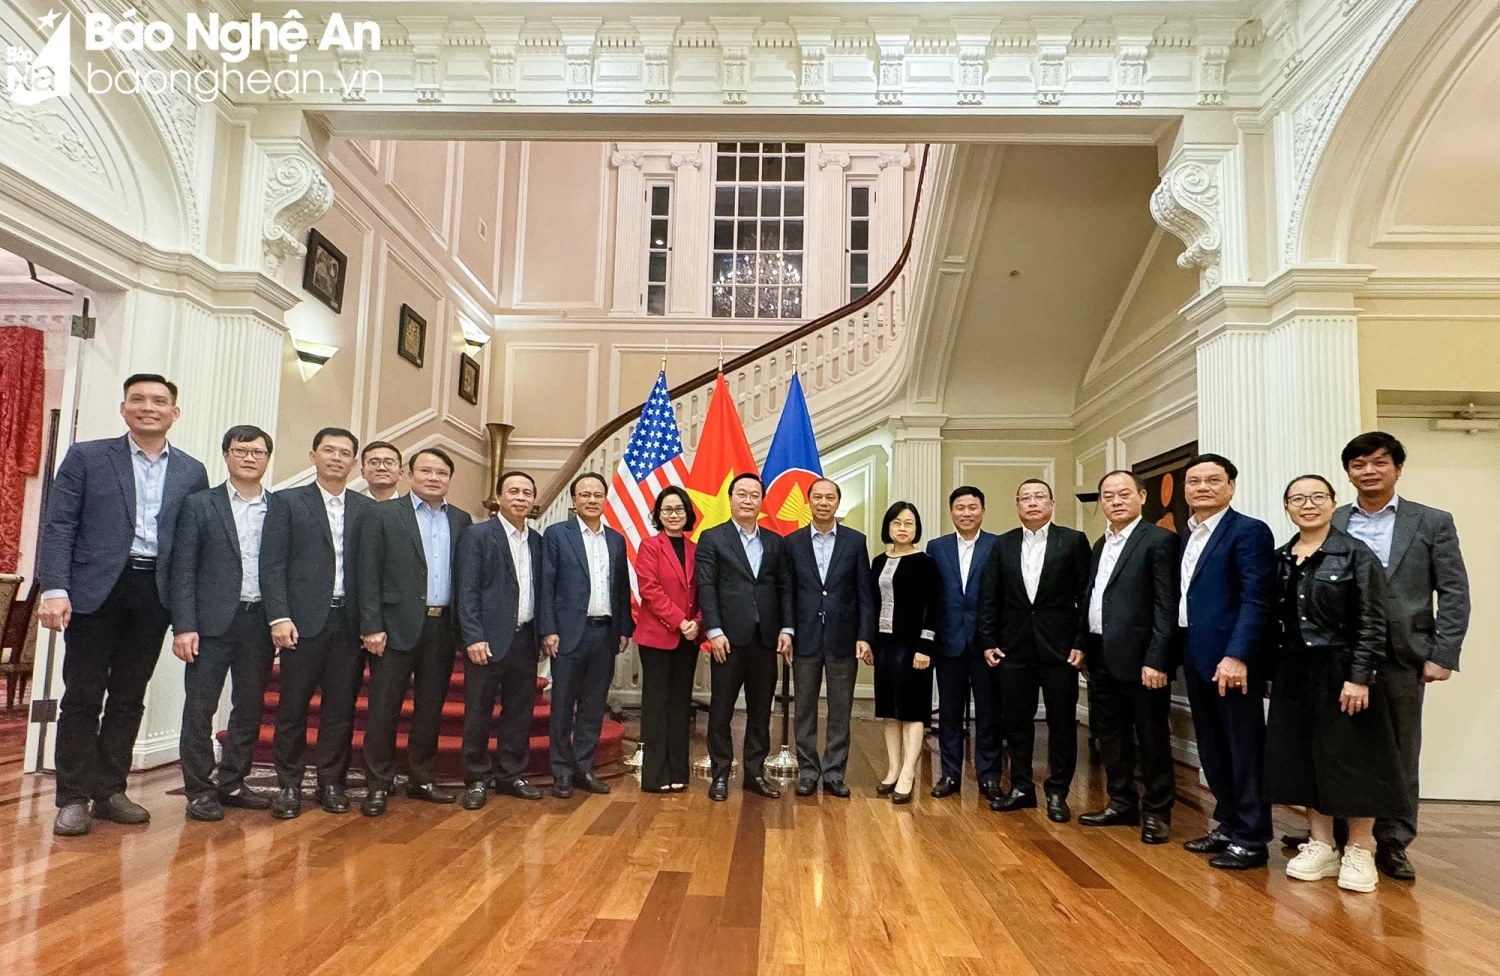 Đoàn công tác tỉnh Nghệ An chụp ảnh lưu niệm với các cán bộ Đại sứ quán Việt Nam tại Hoa Kỳ Ảnh BNA